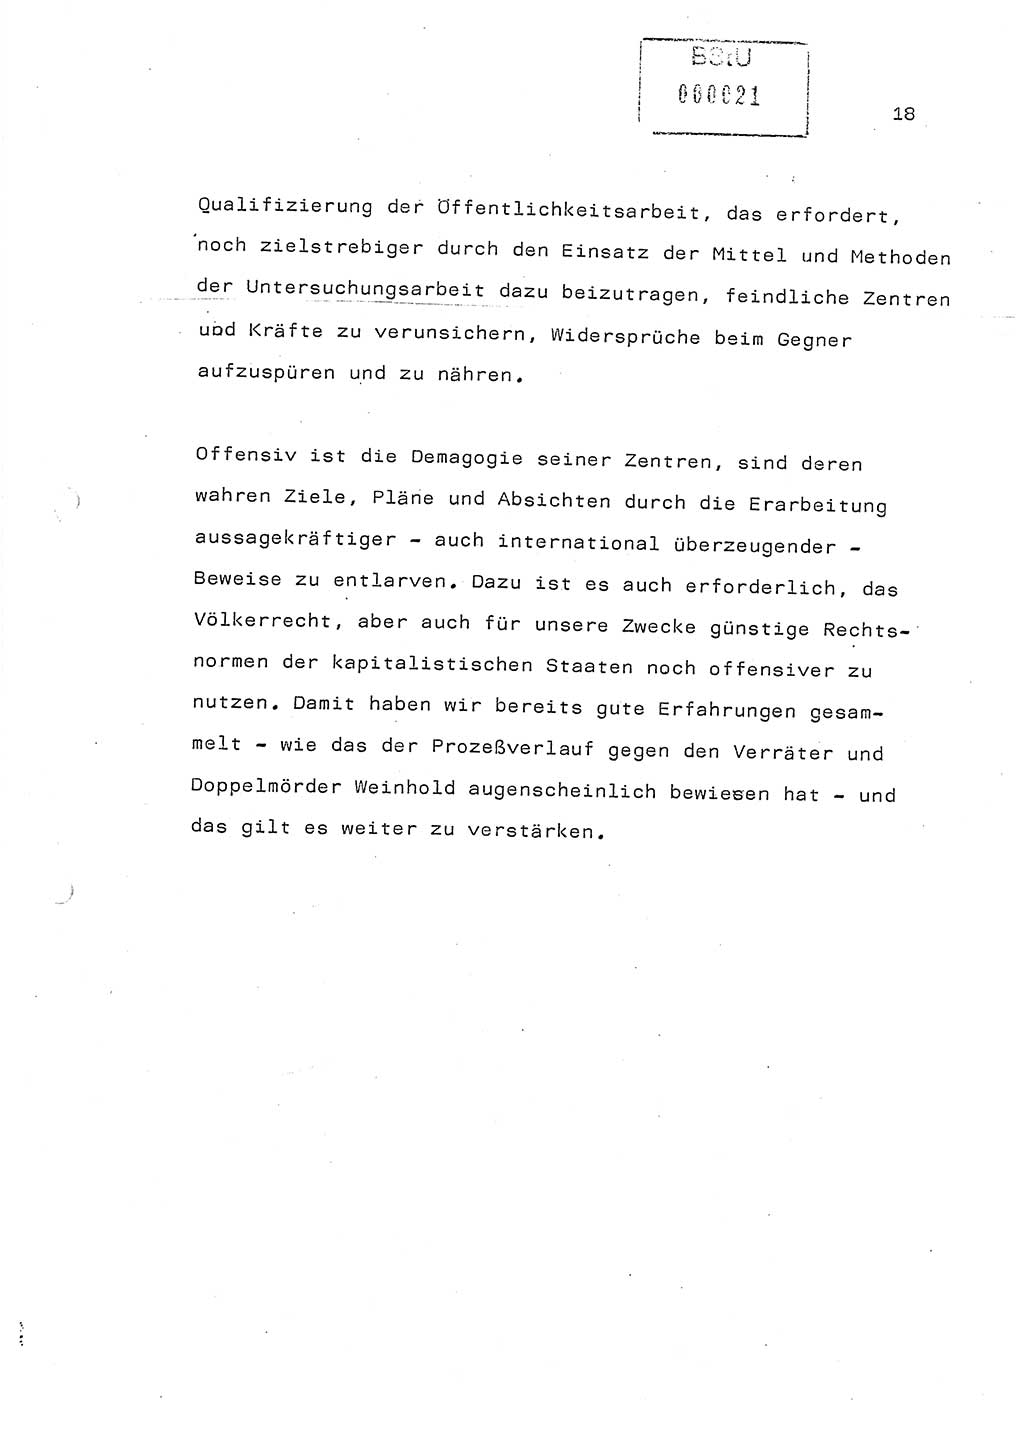 Referat (Generaloberst Erich Mielke) auf der Zentralen Dienstkonferenz am 24.5.1979 [Ministerium für Staatssicherheit (MfS), Deutsche Demokratische Republik (DDR), Der Minister], Berlin 1979, Seite 18 (Ref. DK DDR MfS Min. /79 1979, S. 18)